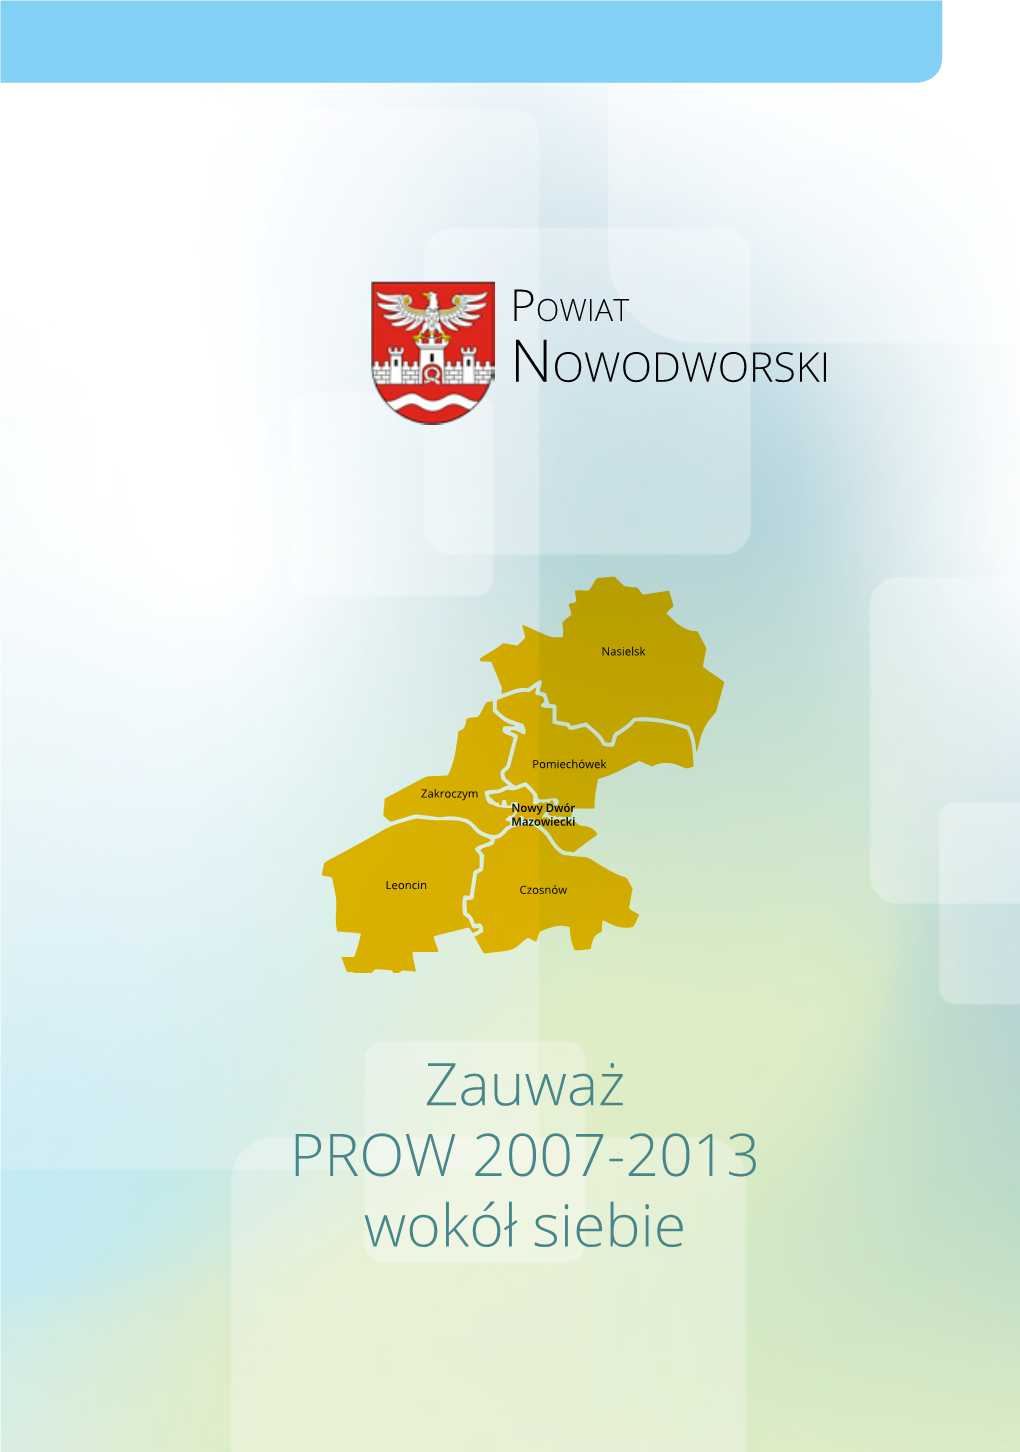 Zauważ PROW 2007-2013 Wokół Siebie Powiat NOWODWORSKI